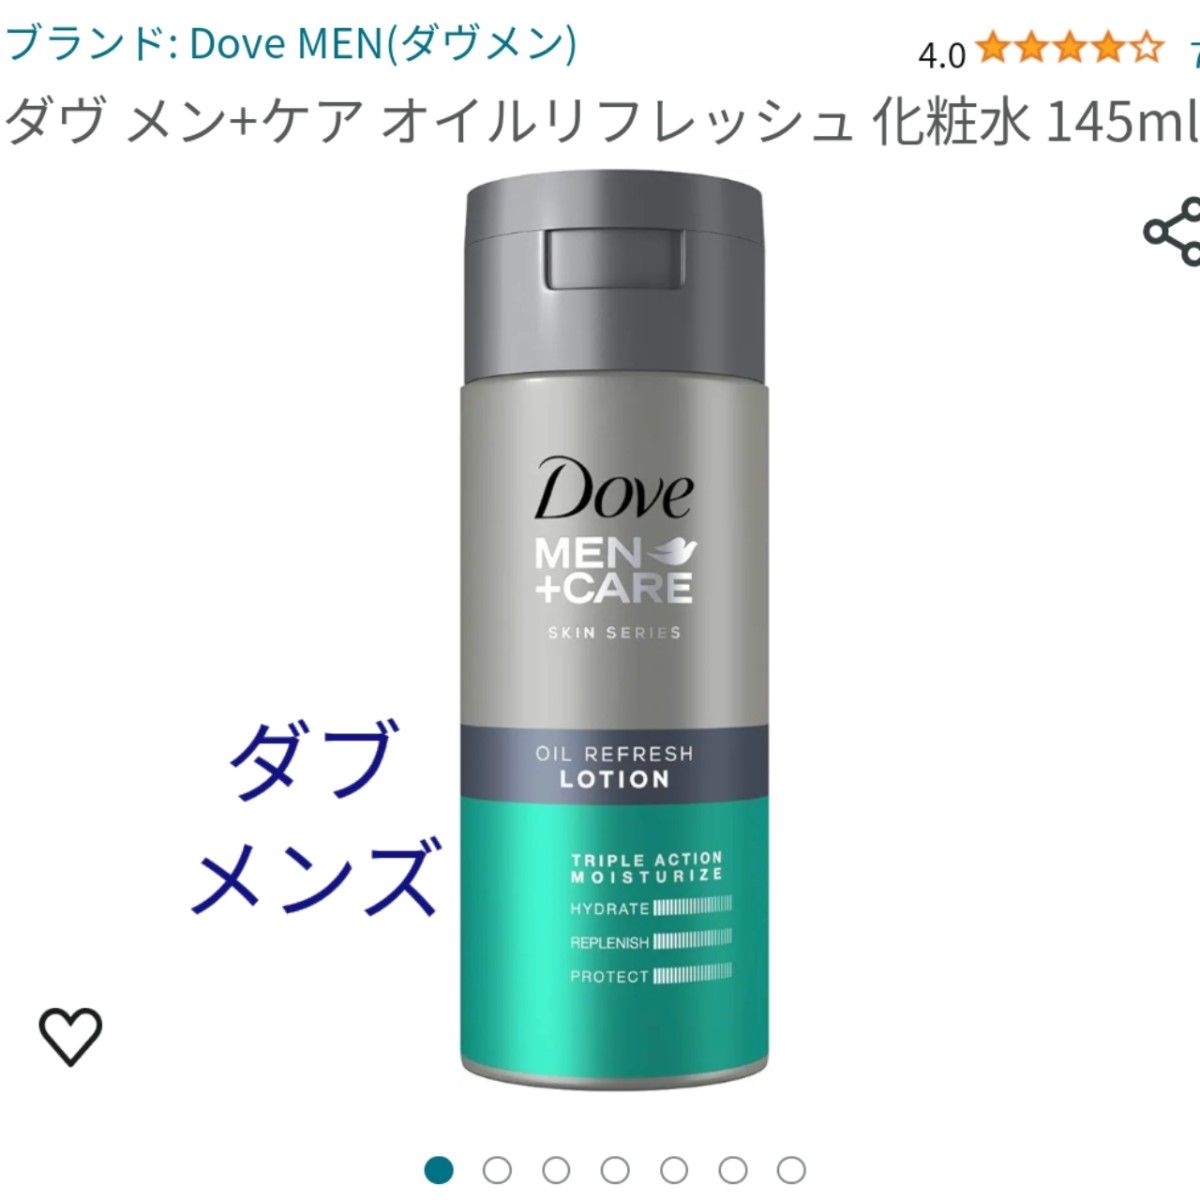 ダブメンズ化粧水サッパリタイプ4本 Dove MEN この保湿力が男の乾燥を防ぐ145mlと、オマケ